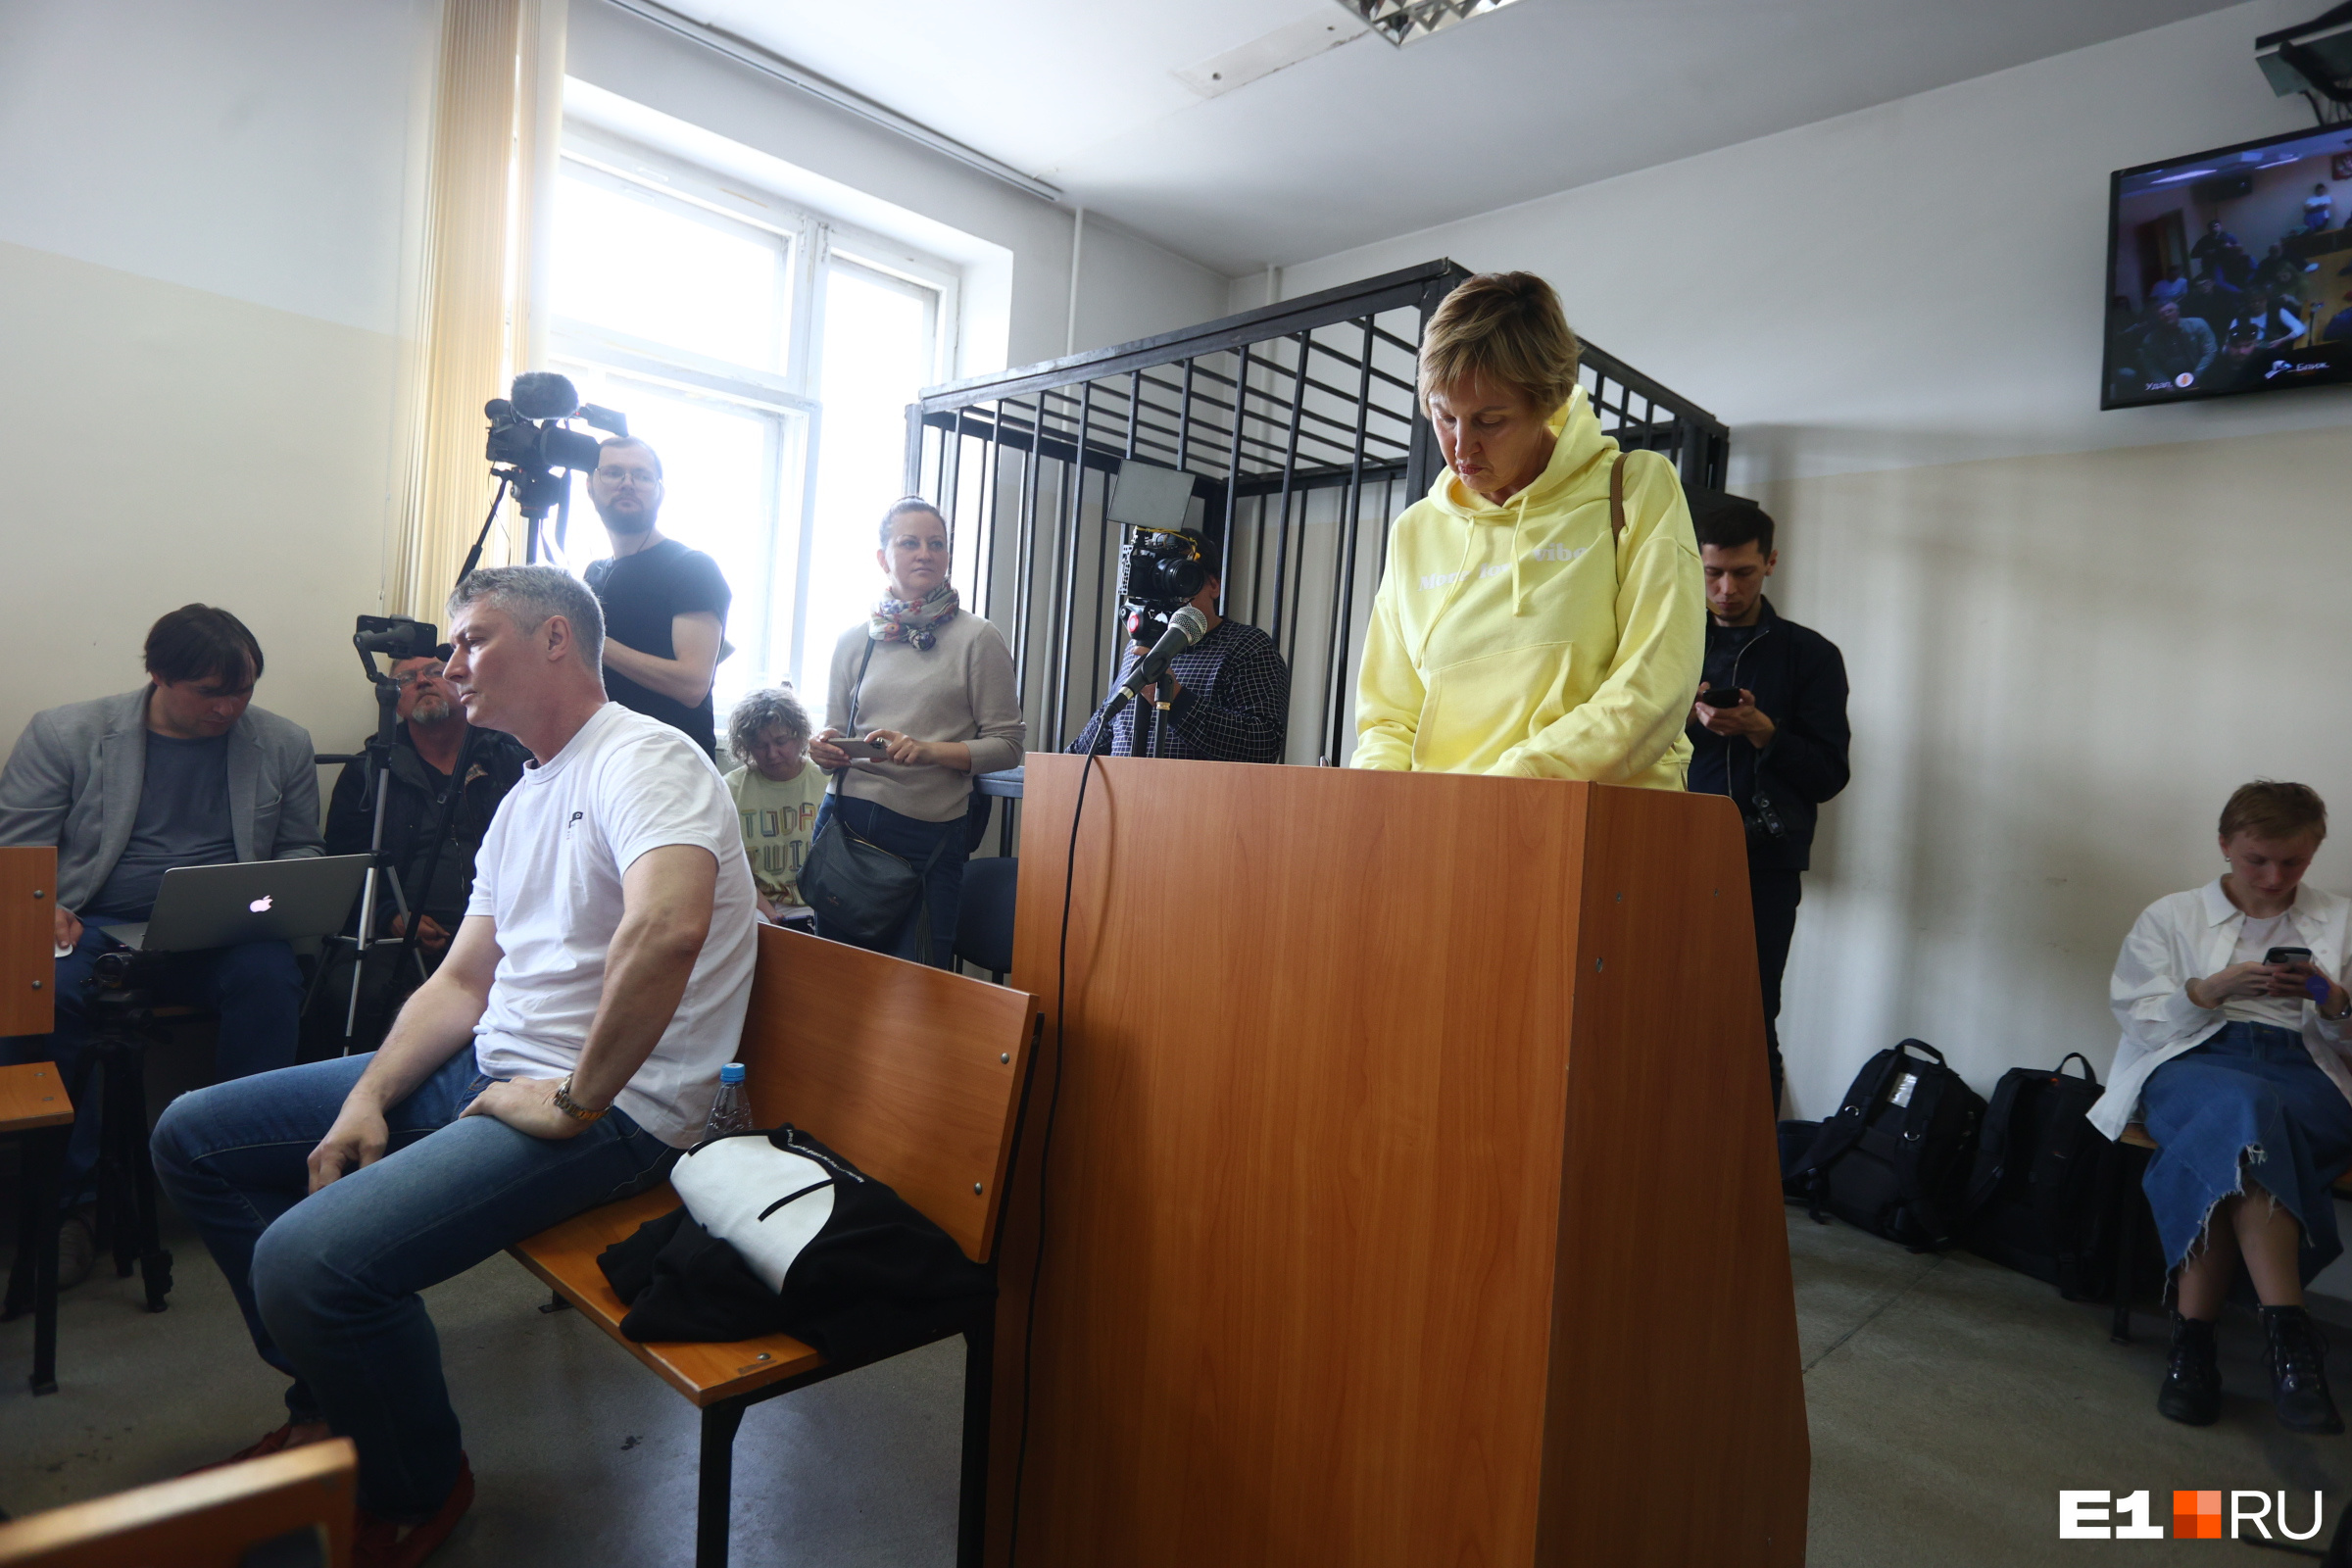 Судья спросил Юлию Крутееву, какие у нее отношения с подсудимым. Она ответила, что у них двое детей, но отношения не зарегистрированы